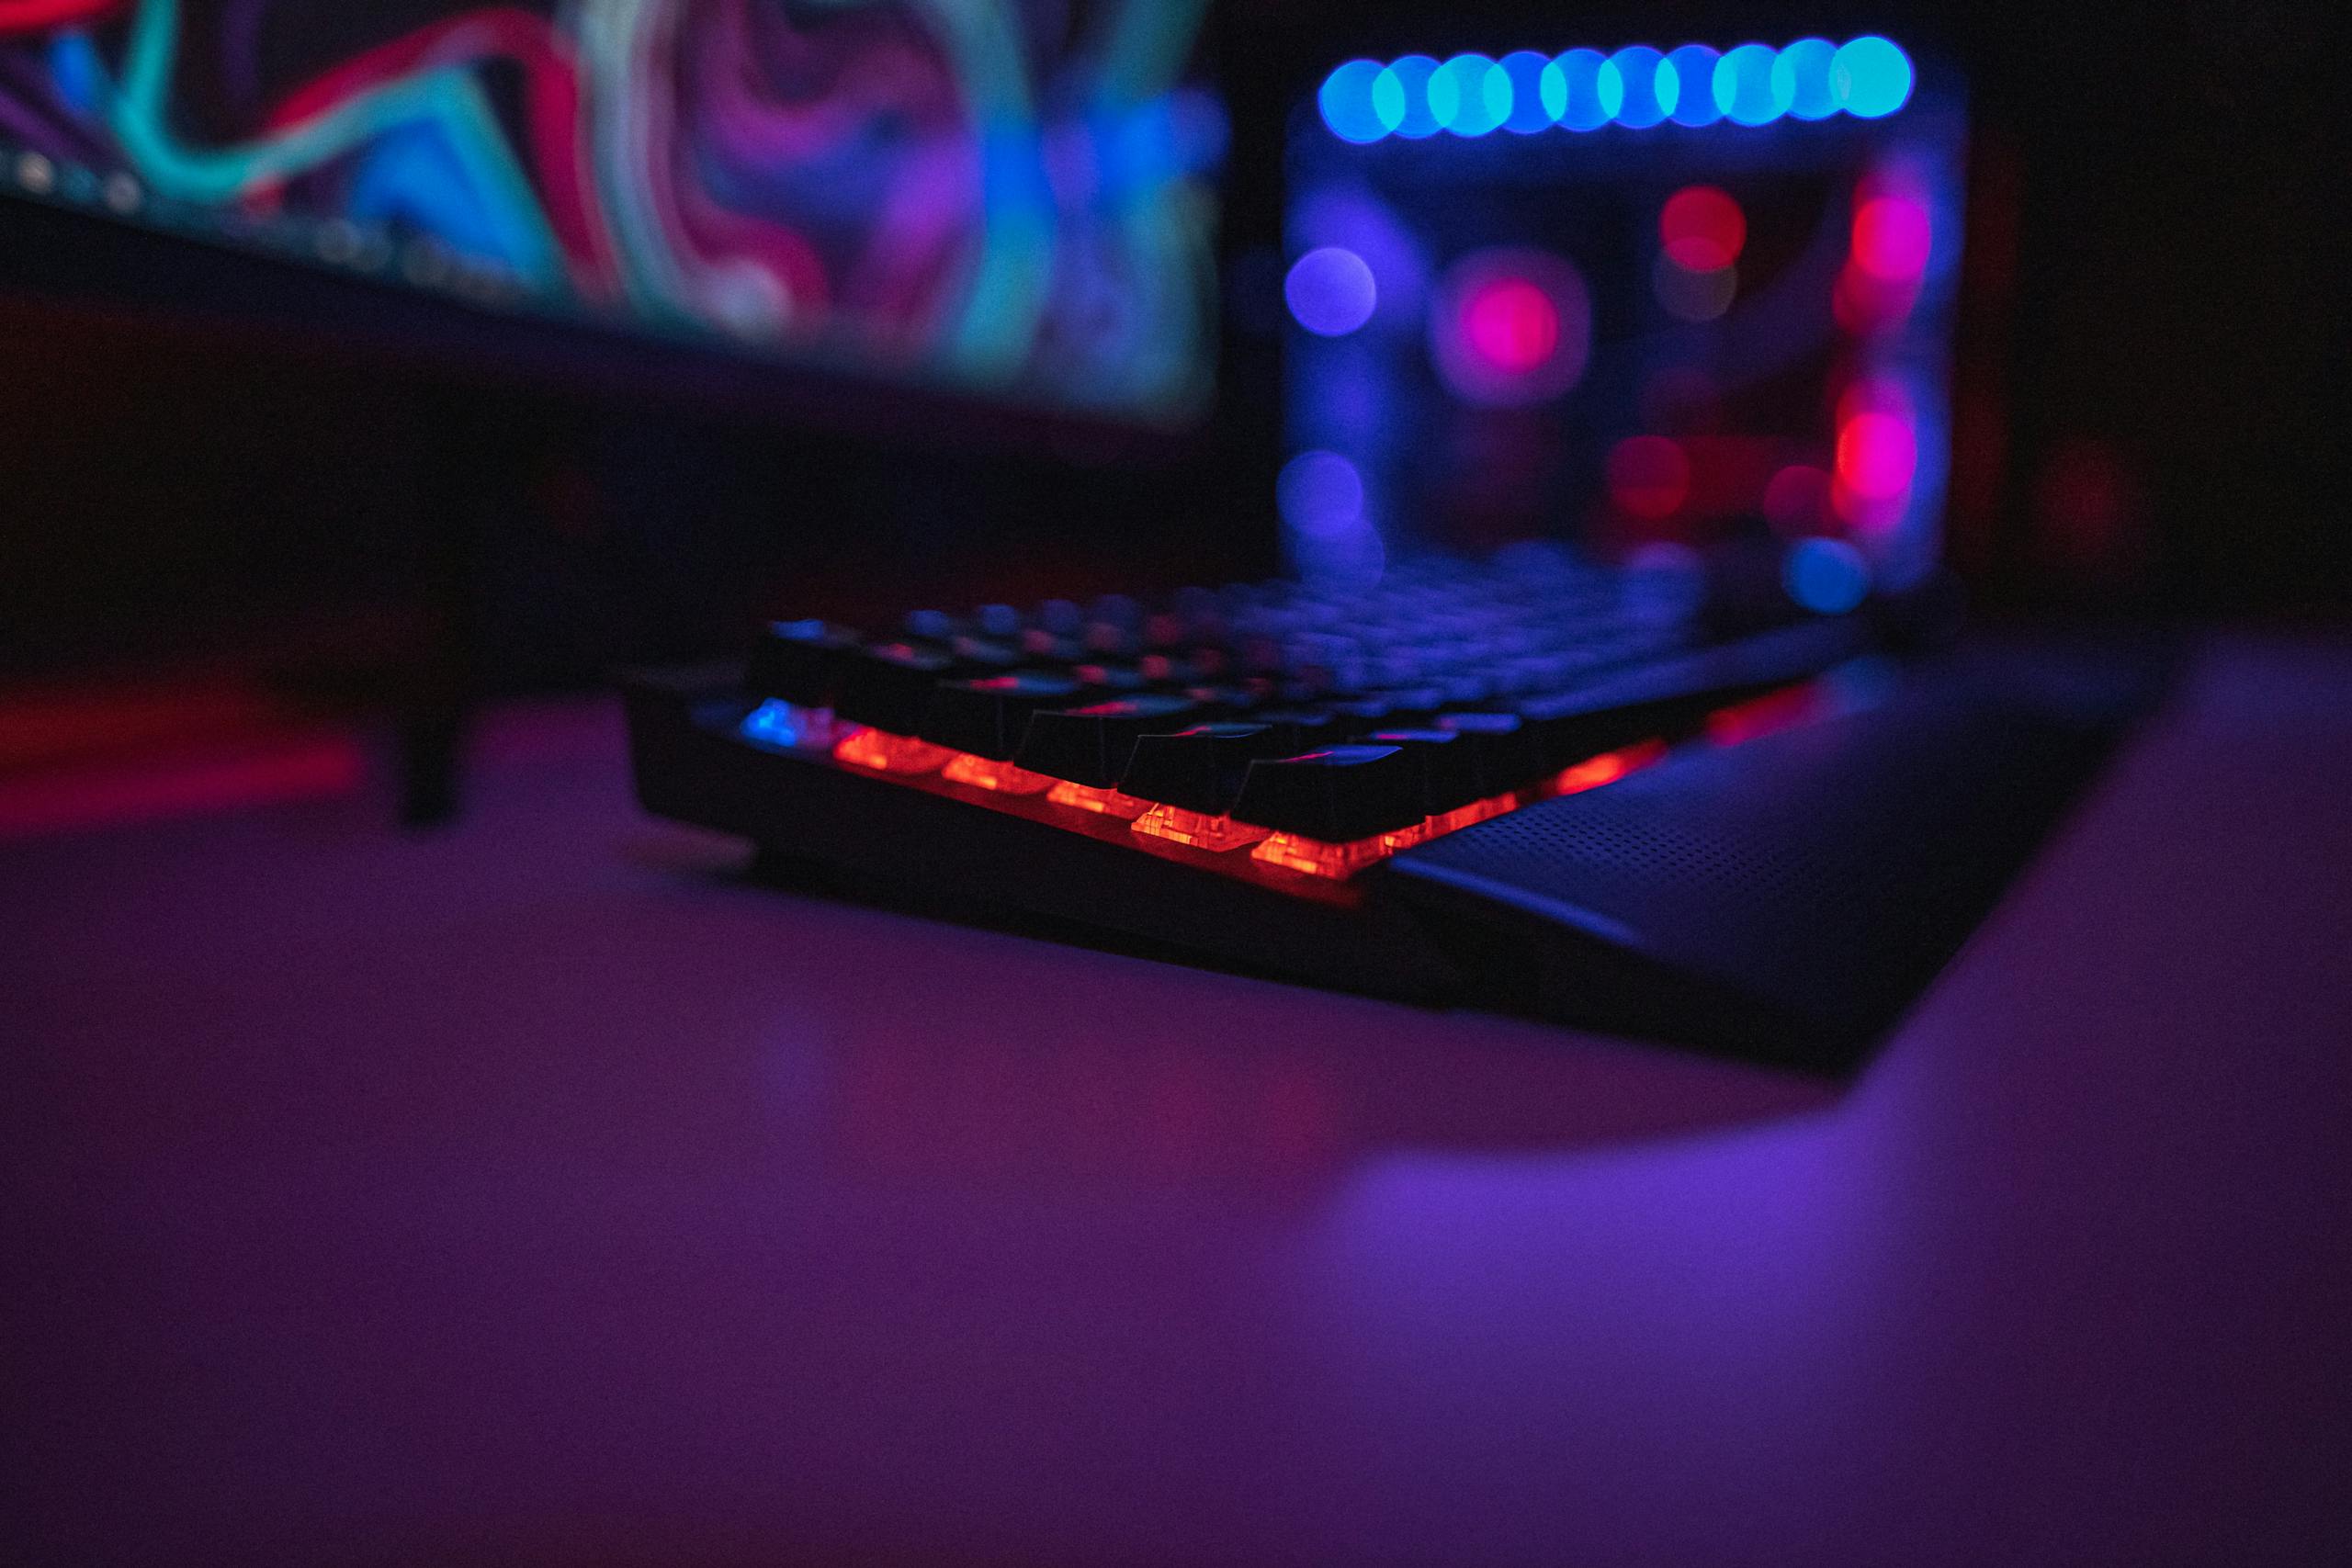 Keyboard on desk lit in blue and purple light